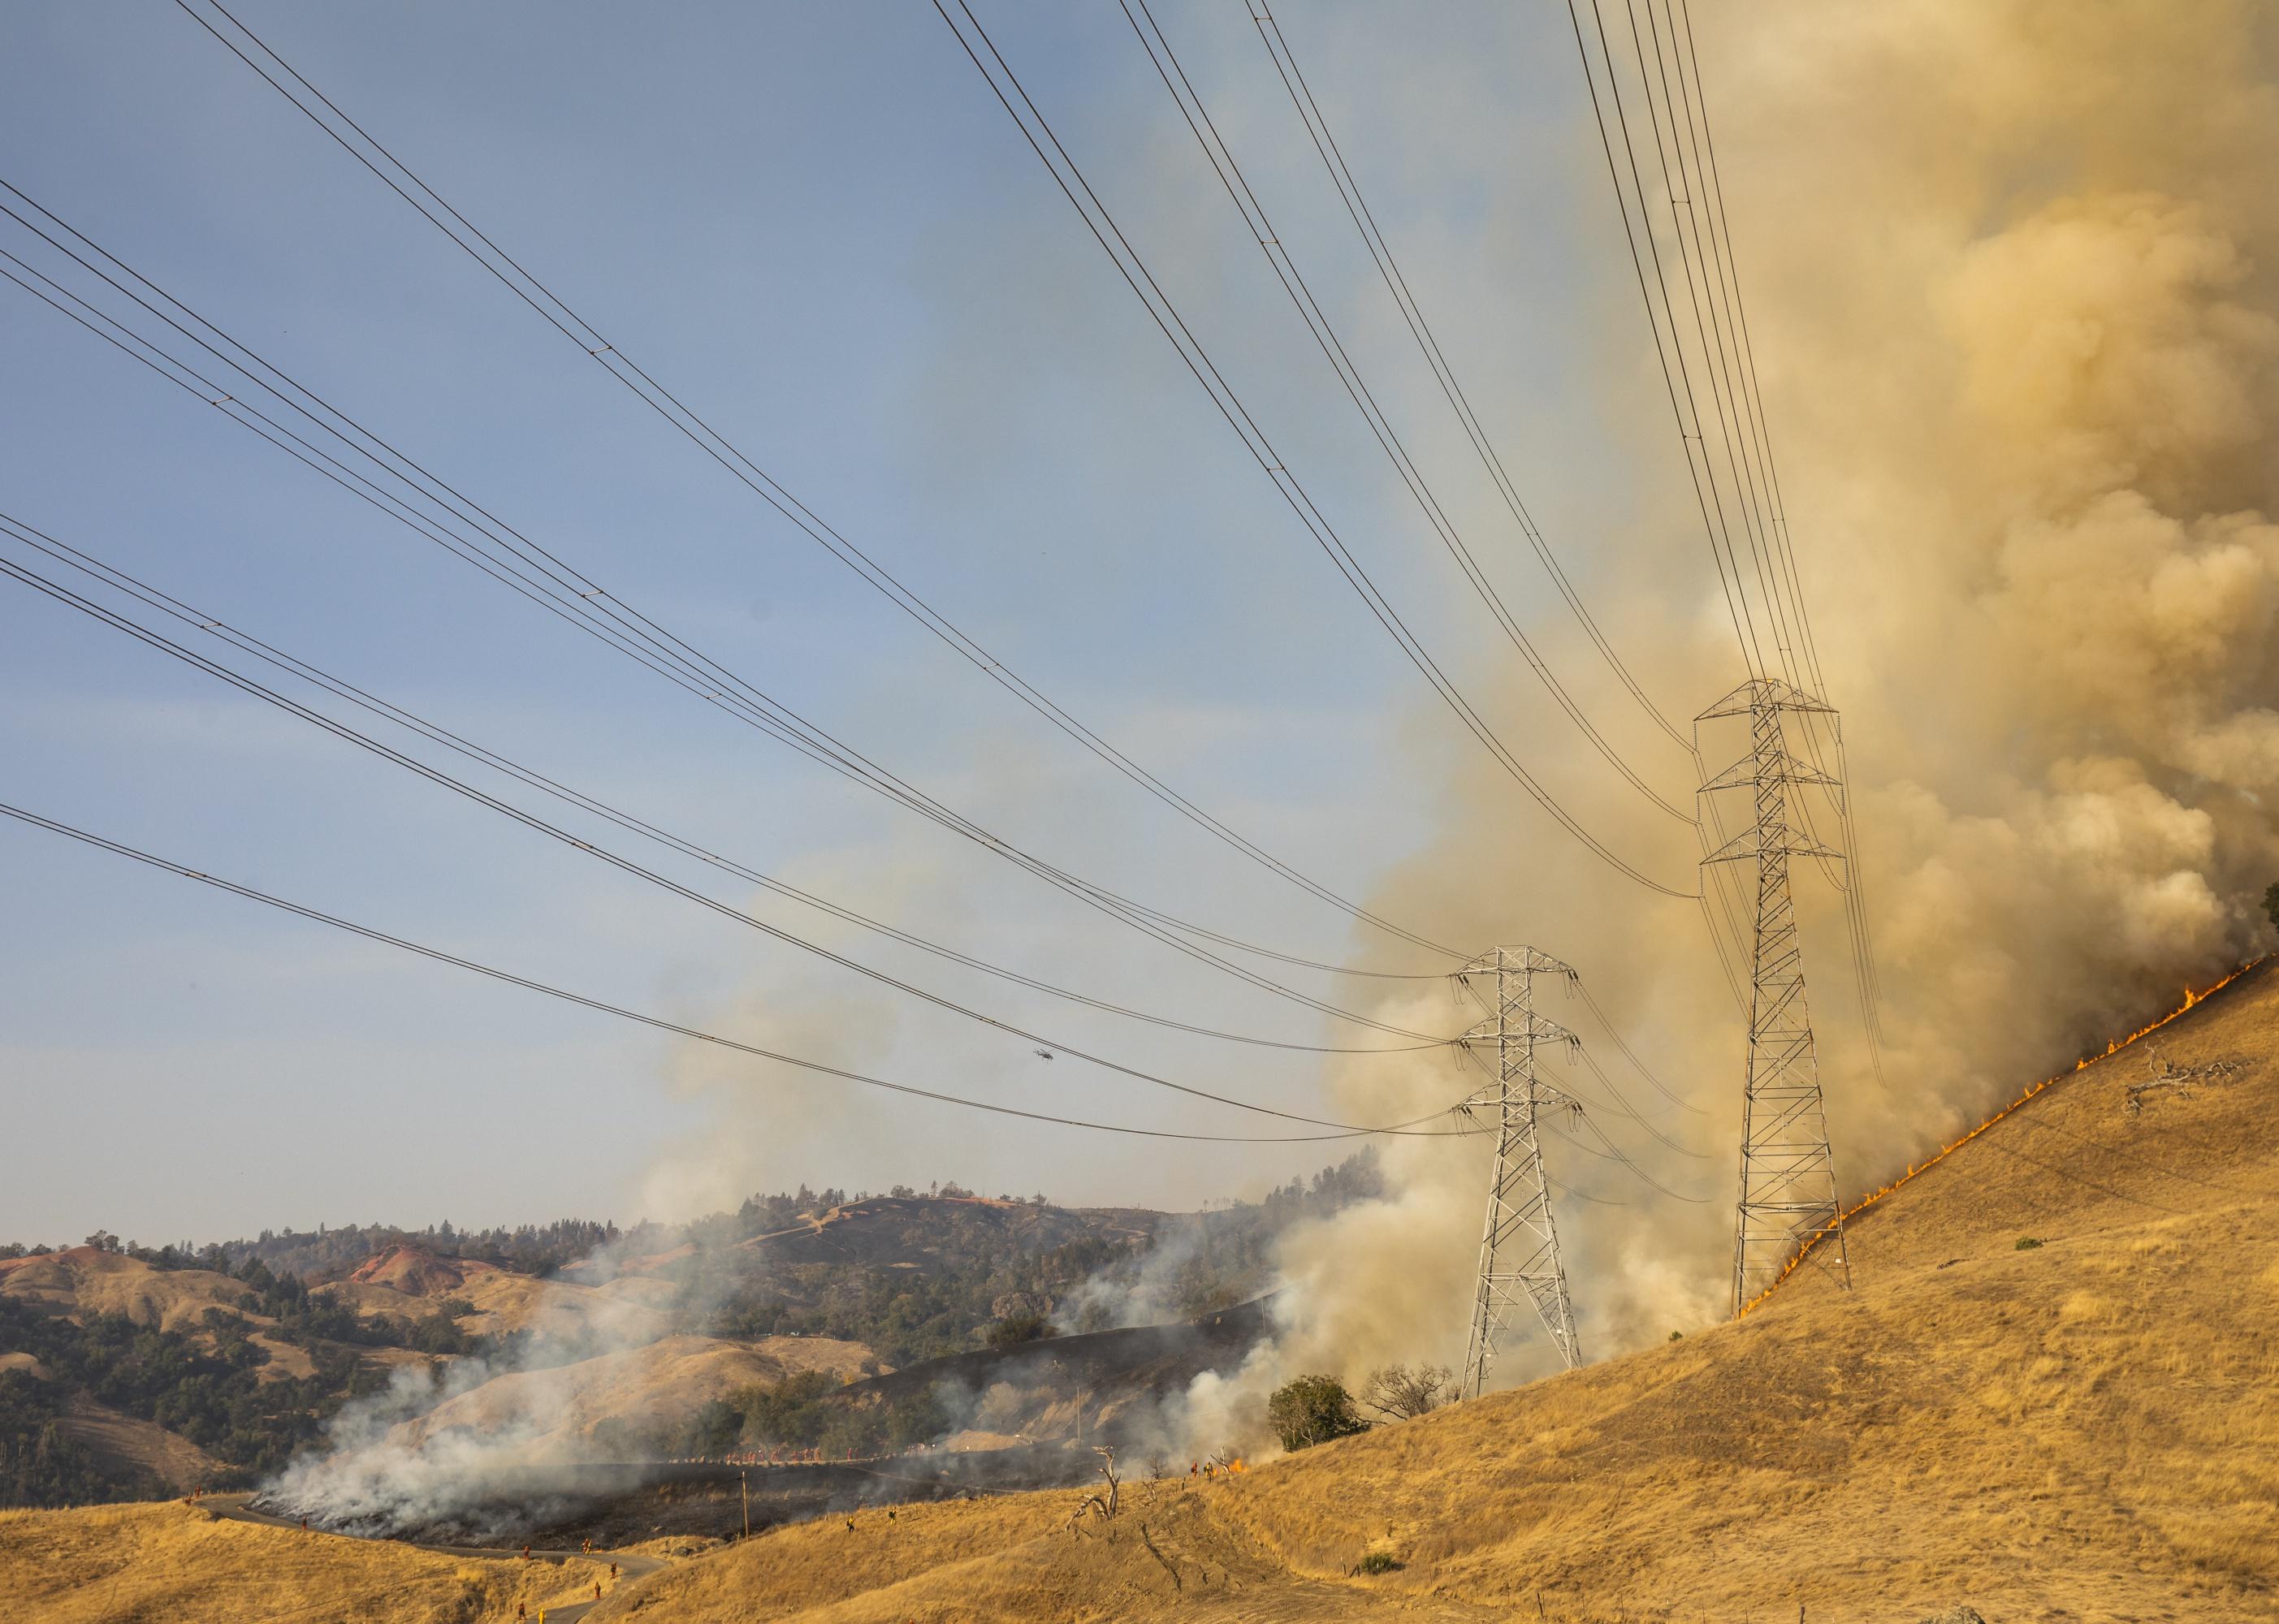 A fire burns a hillside behind PG&E power lines.